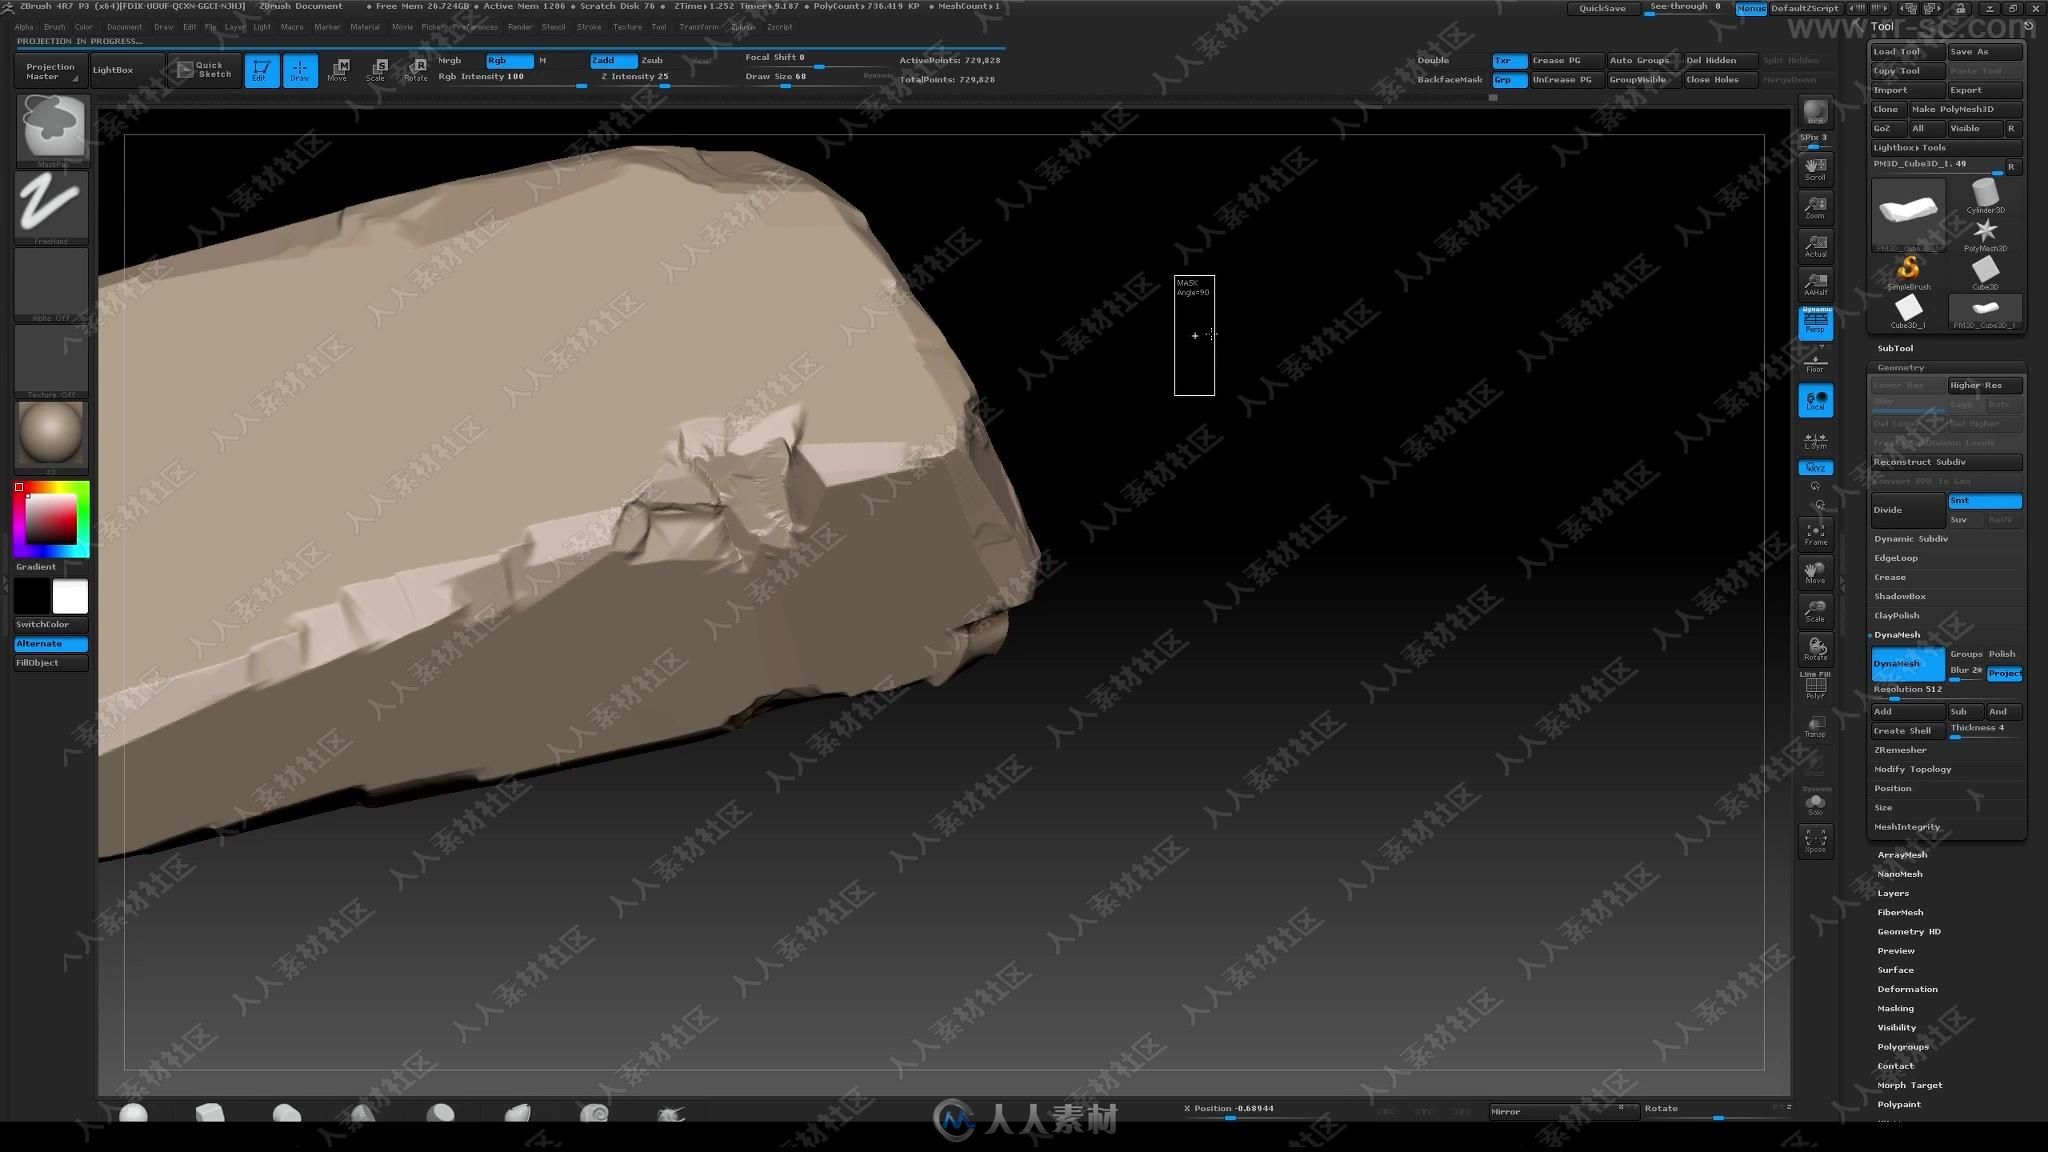 超逼真岩石运用CG技术综合制作实例训练视频教程